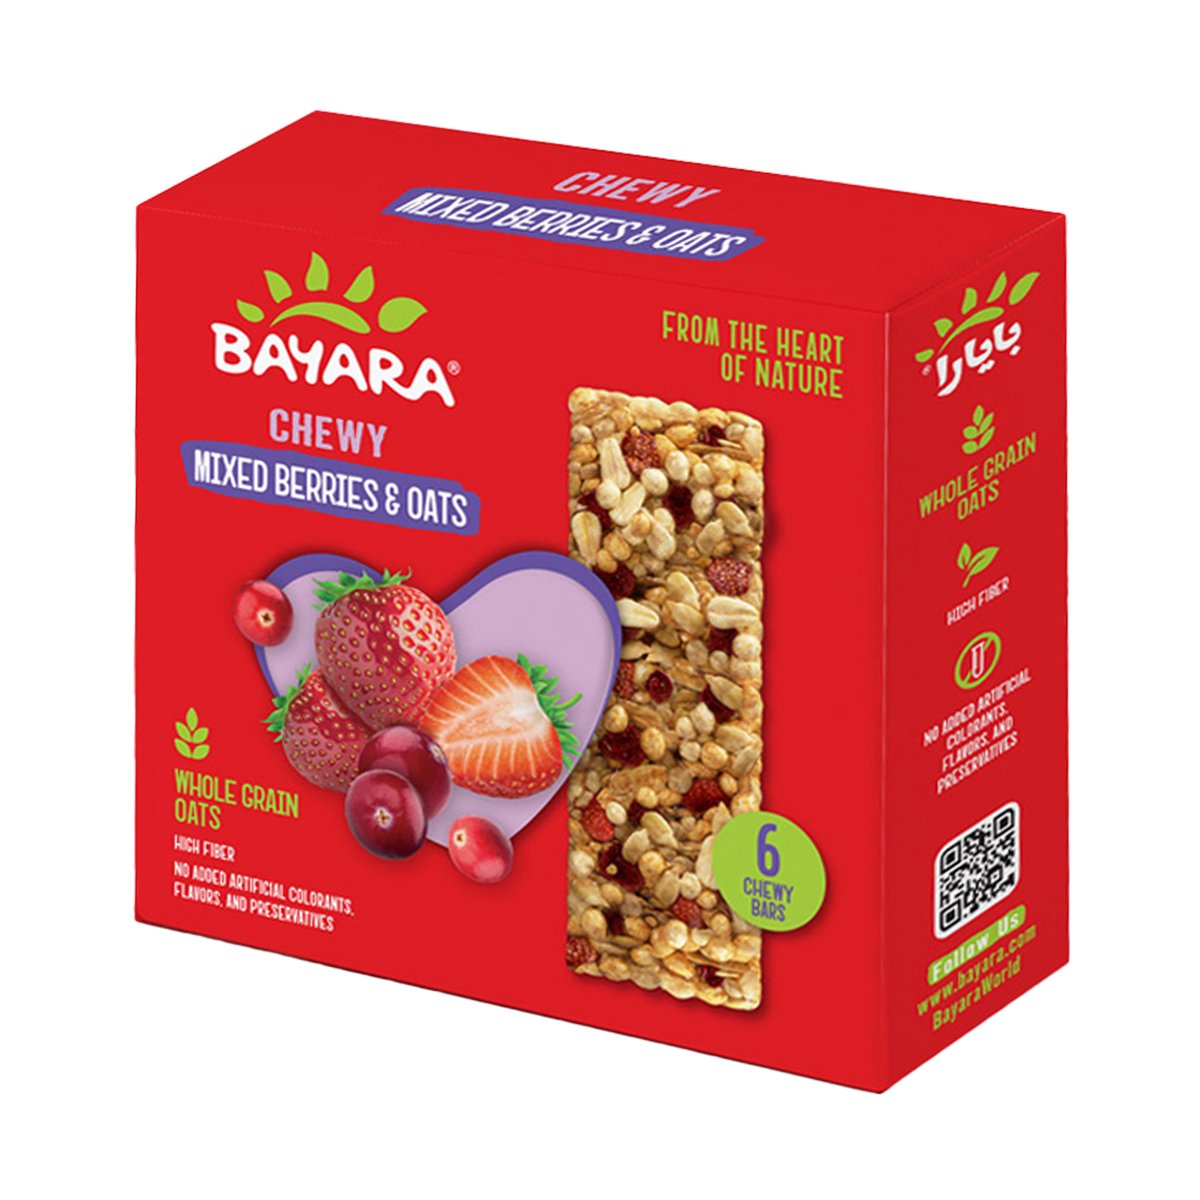 Bayara Mixed Berries & Oats Chewy Bar 30 g